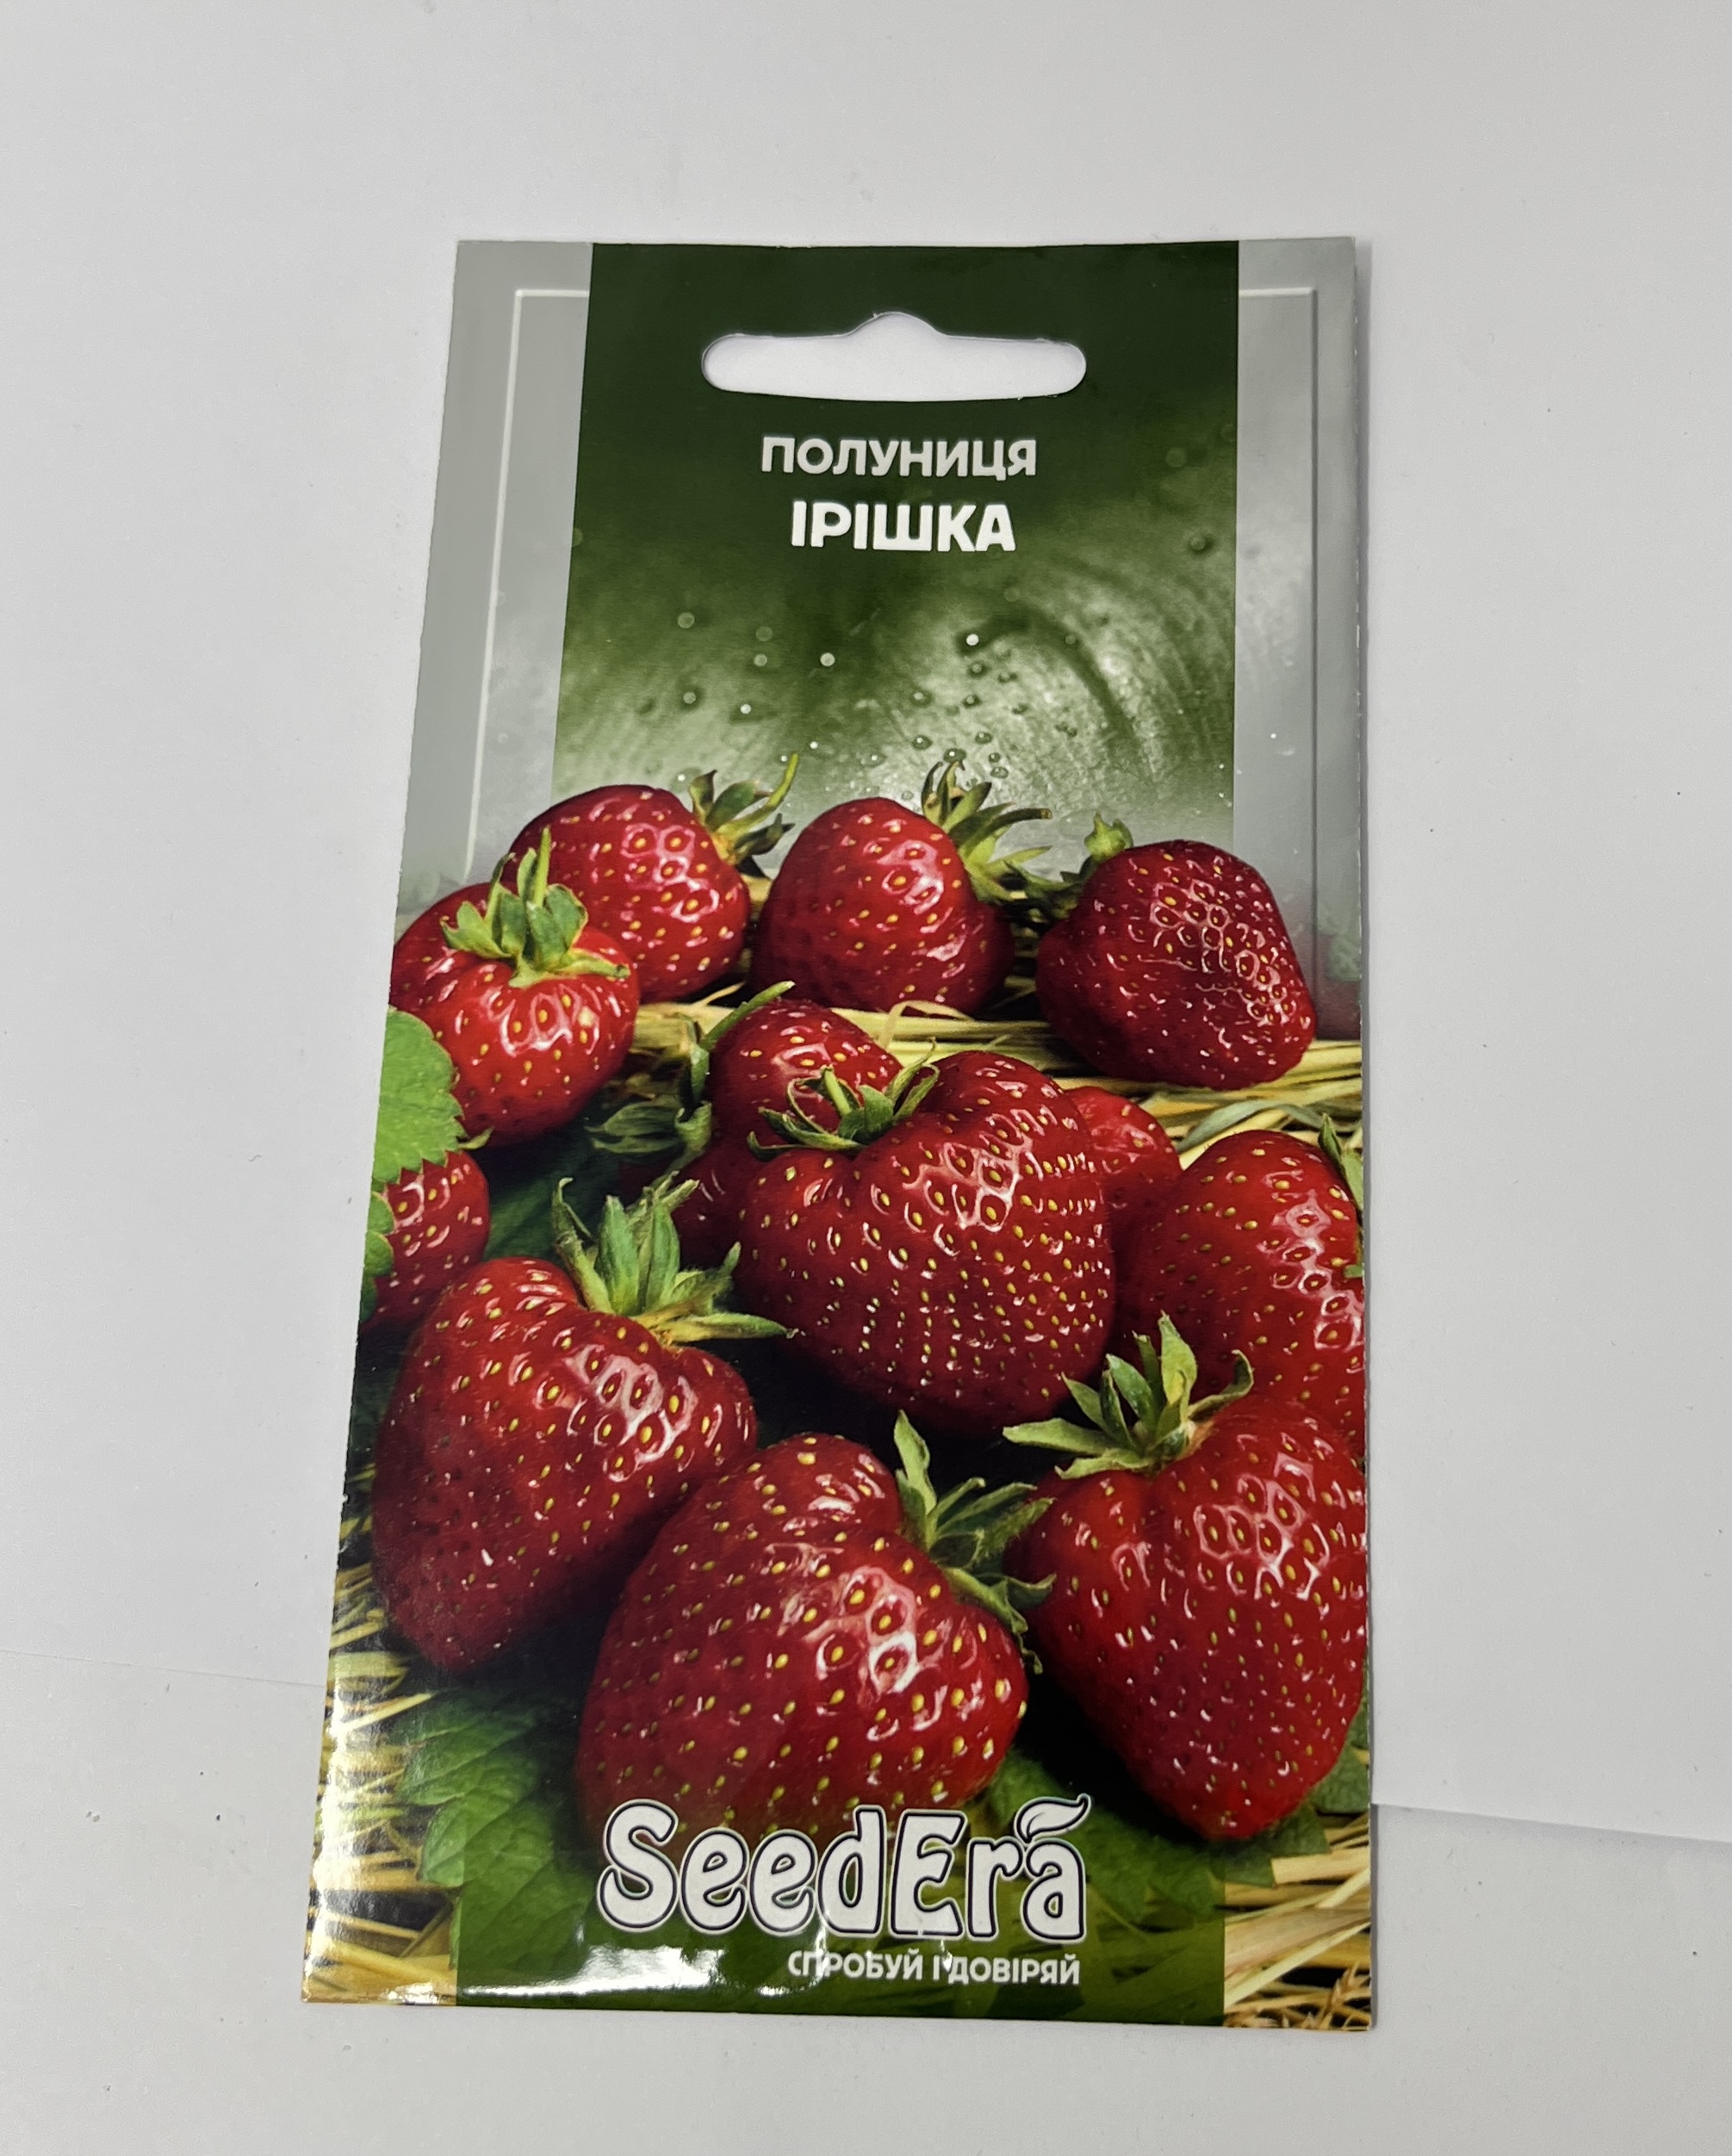 Strawberry seeds "Irishka"